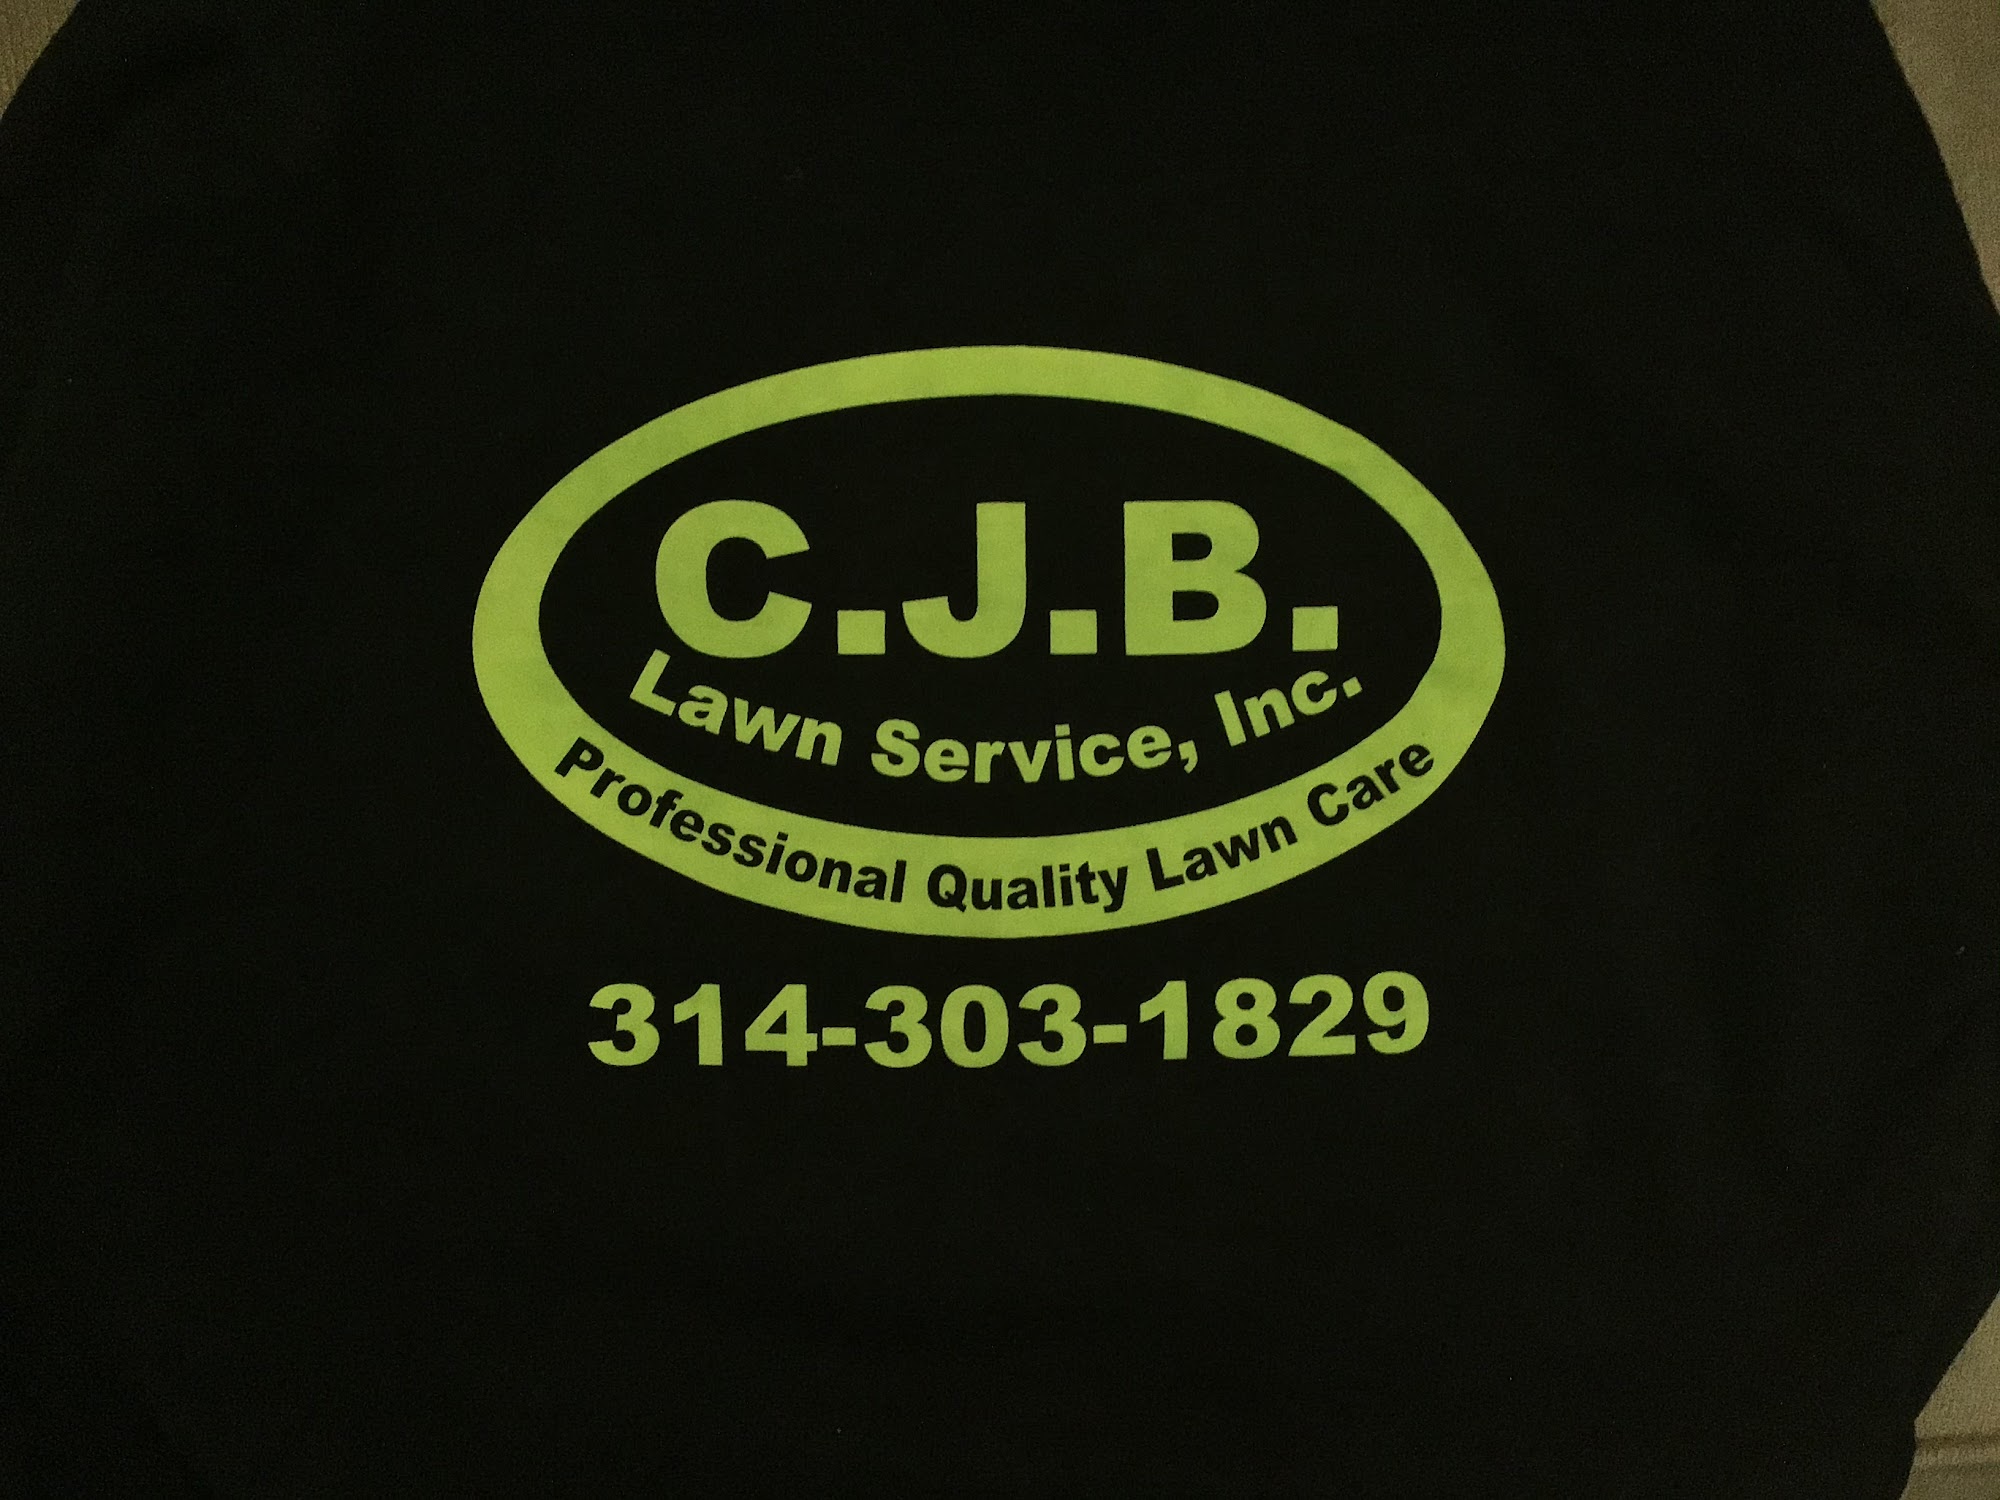 CJB Lawn Service Inc.